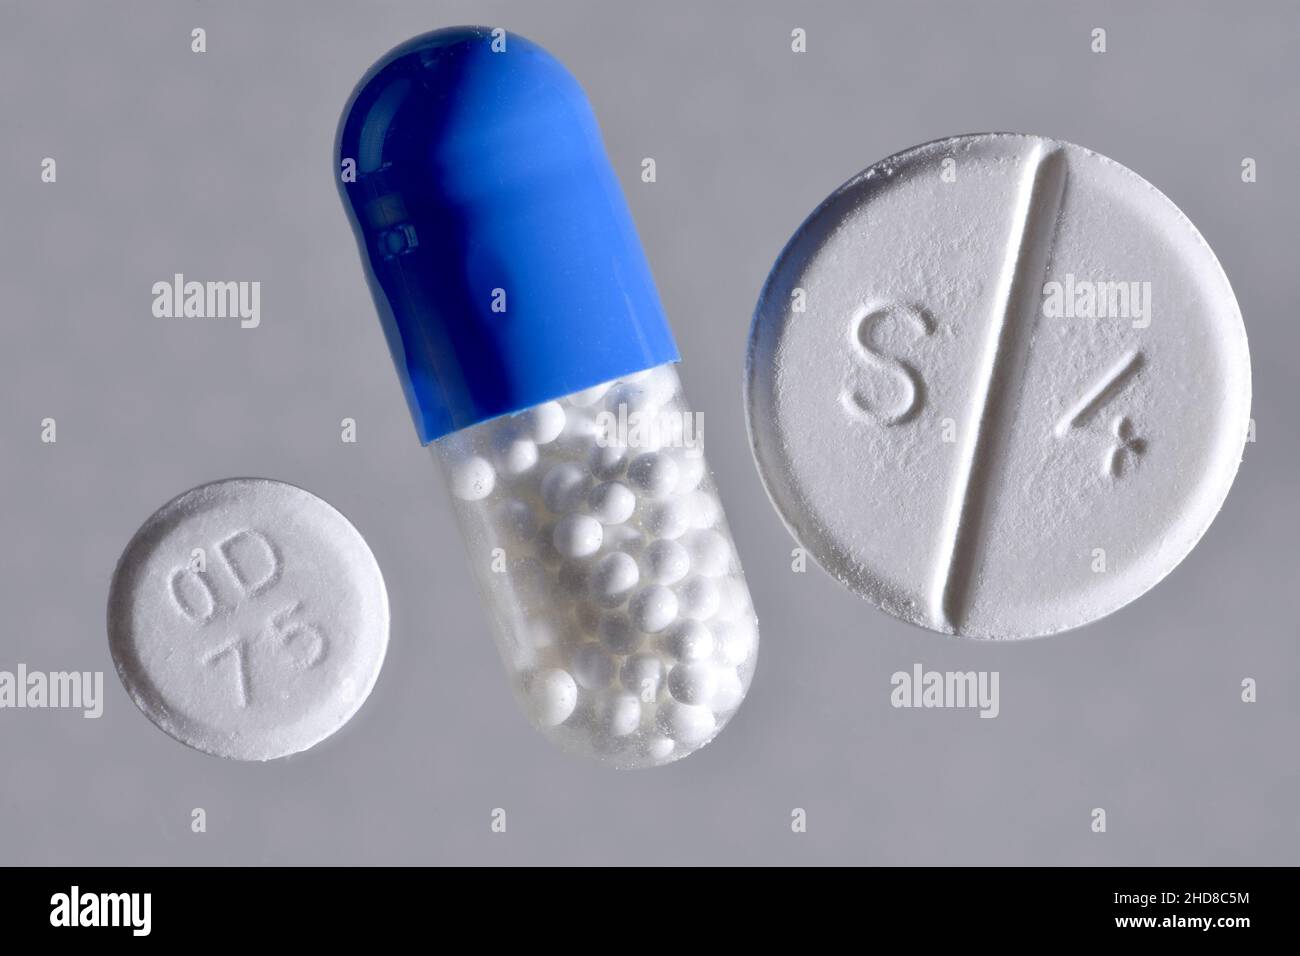 Antidolorifici: Capsula di ibuprofene, compressa di Co-codamolo (S4) e aspirina dispersibile (od 75) Foto Stock